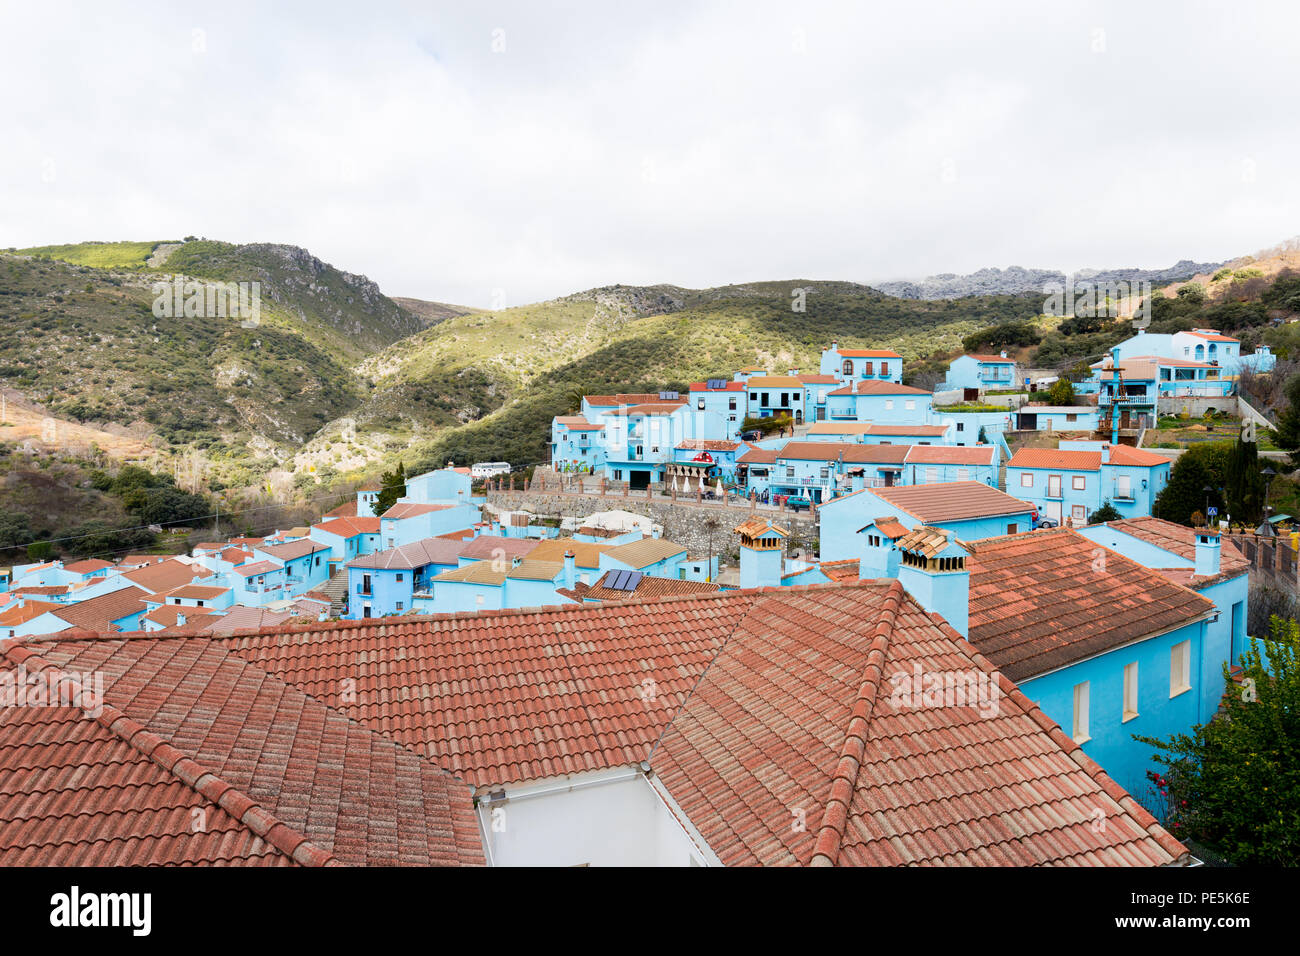 Juzcar Gebäude im Dorf (einschließlich der Kirche) wurden Smurf - Blau von Sony España die Premiere der Schlümpfe Film zu feiern gemalt. Stockfoto